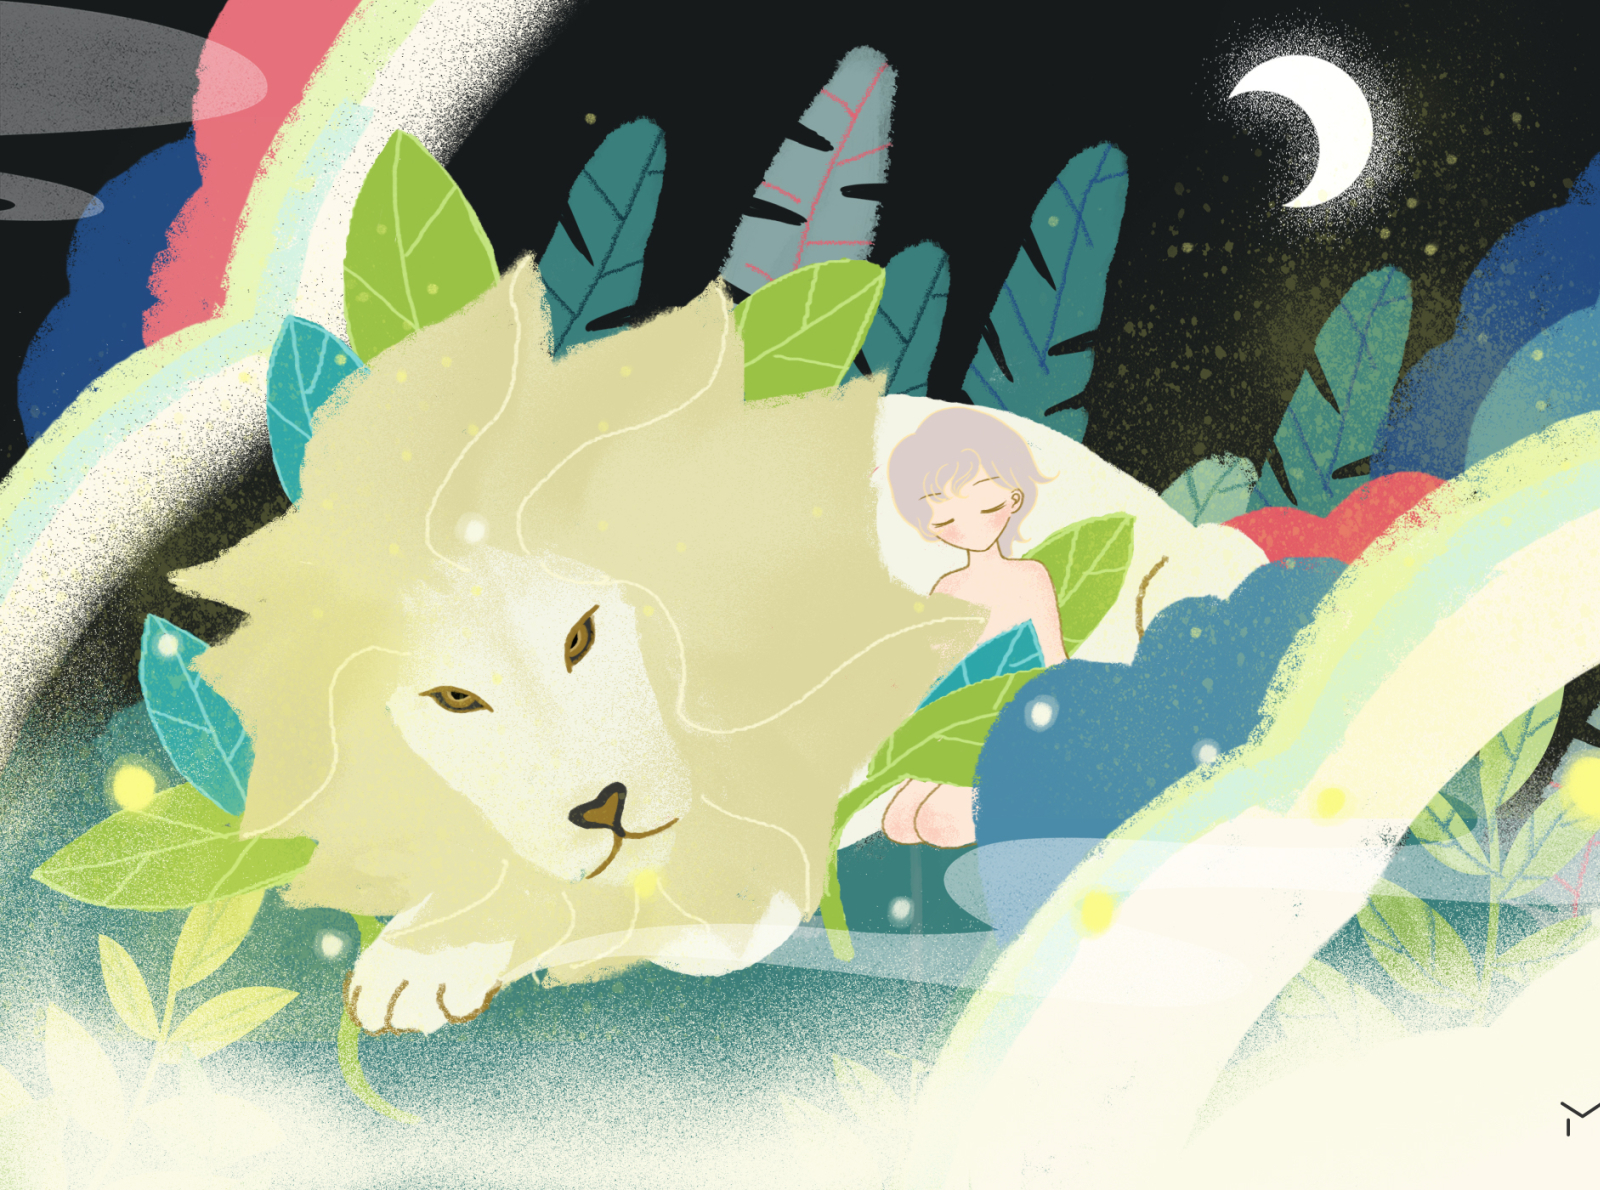 lion & junior story 2 illustration illustrations